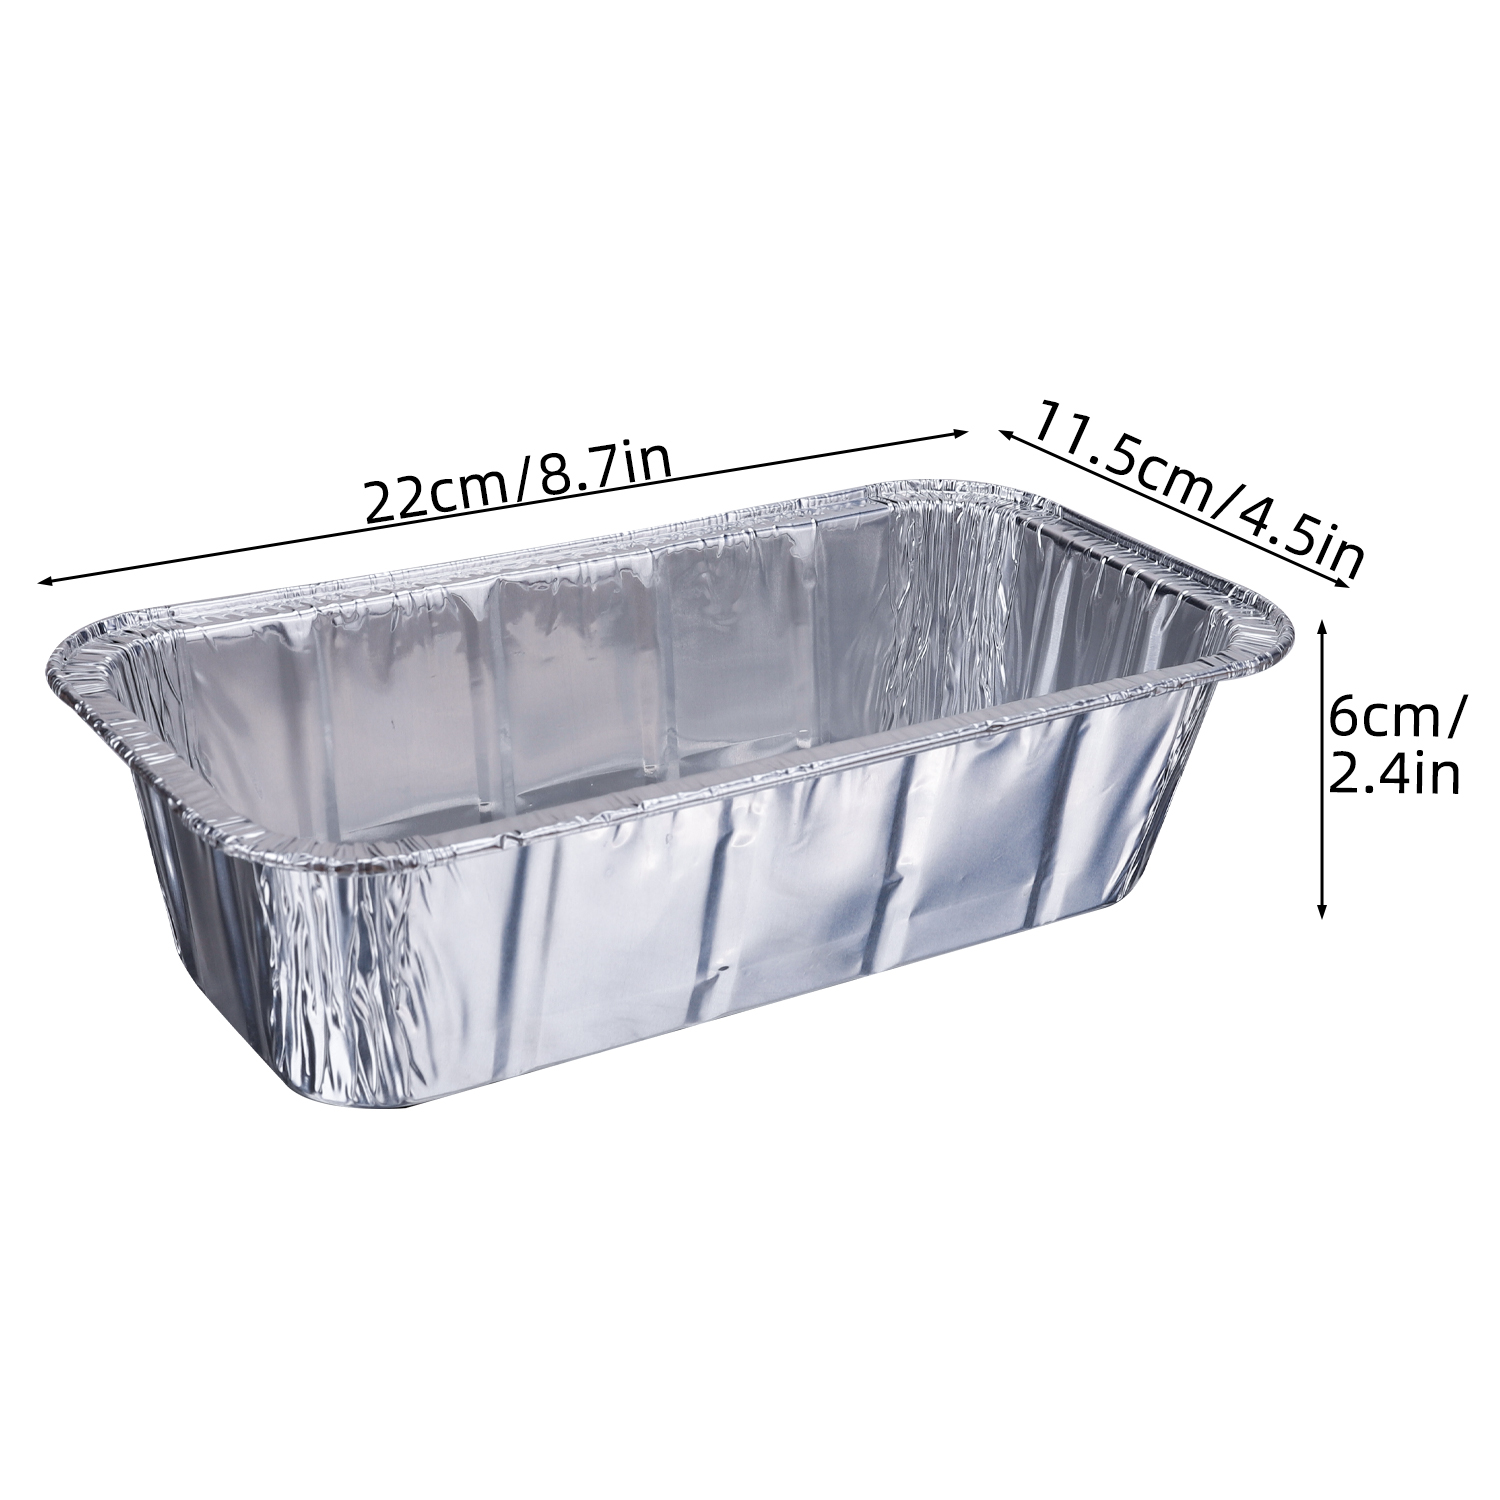 Silver Aluminum Foil Loaf Pans , Disposable Aluminum Baking Pans